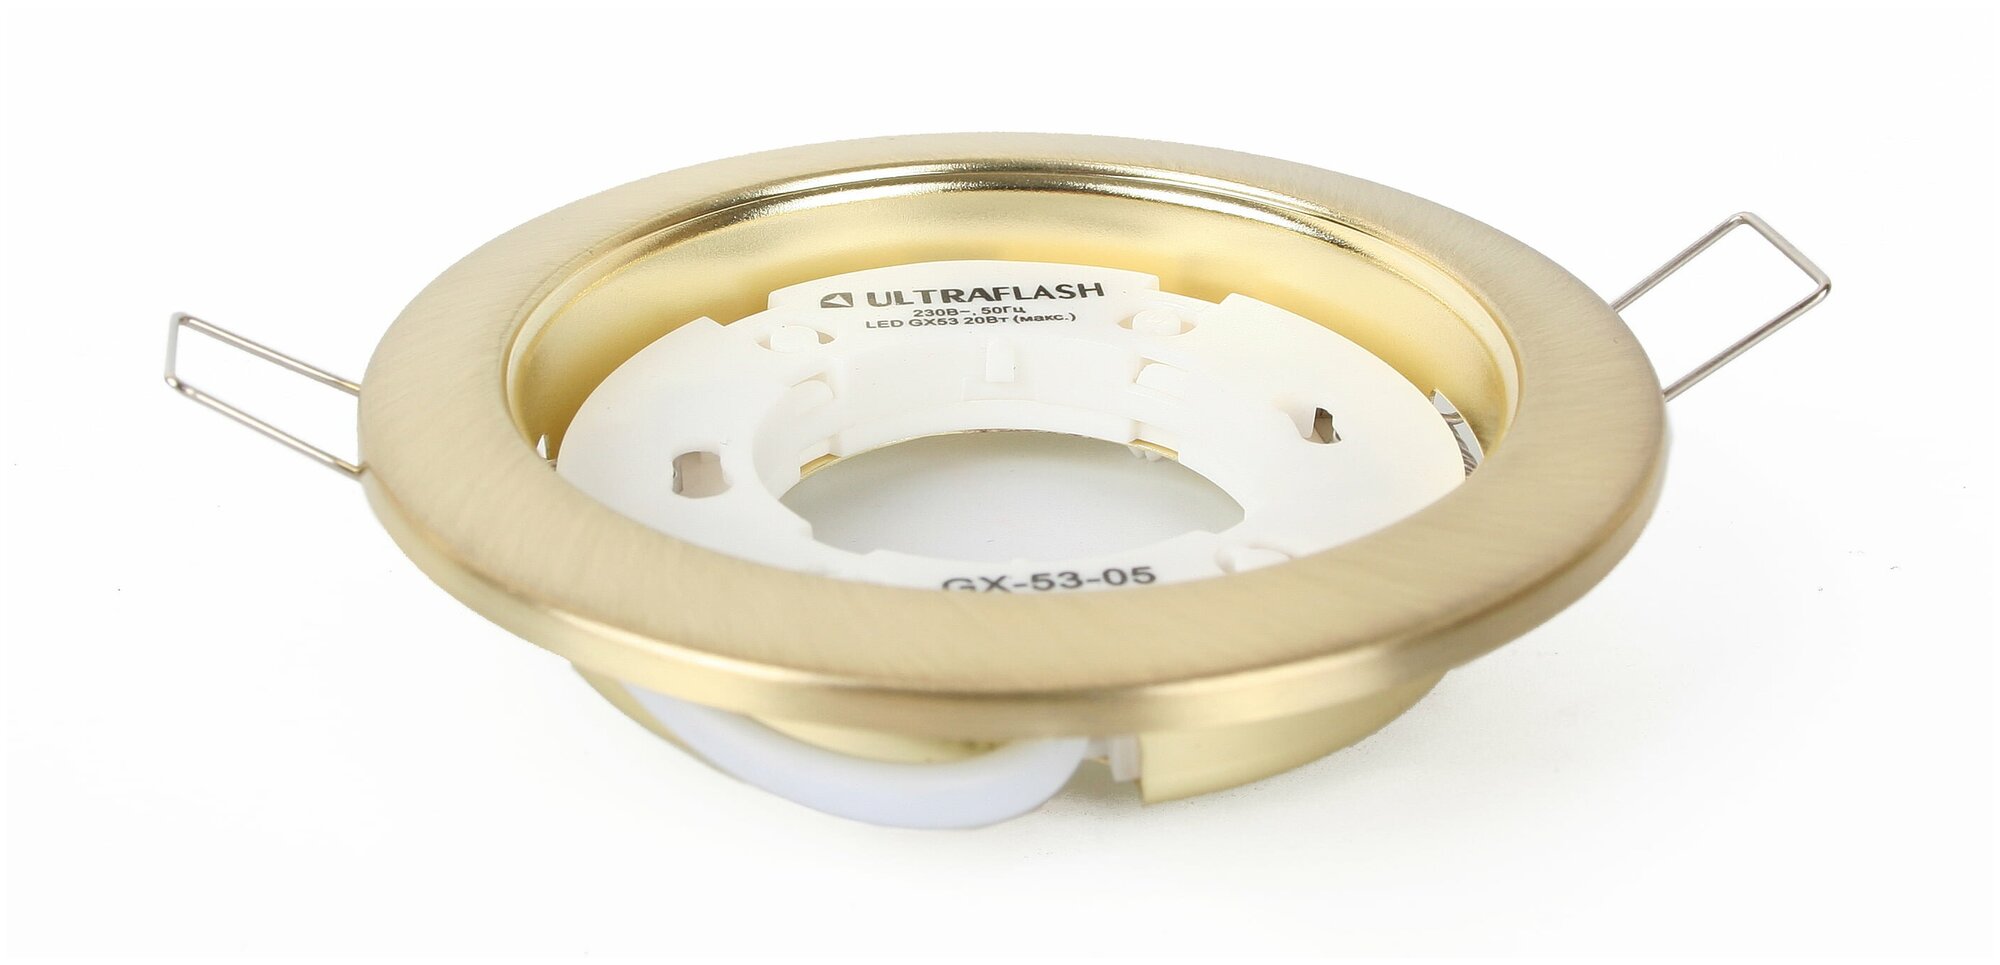 Металлический встраиваемый светильник Ultraflash матовое золото GX-53-05 14059 16122188